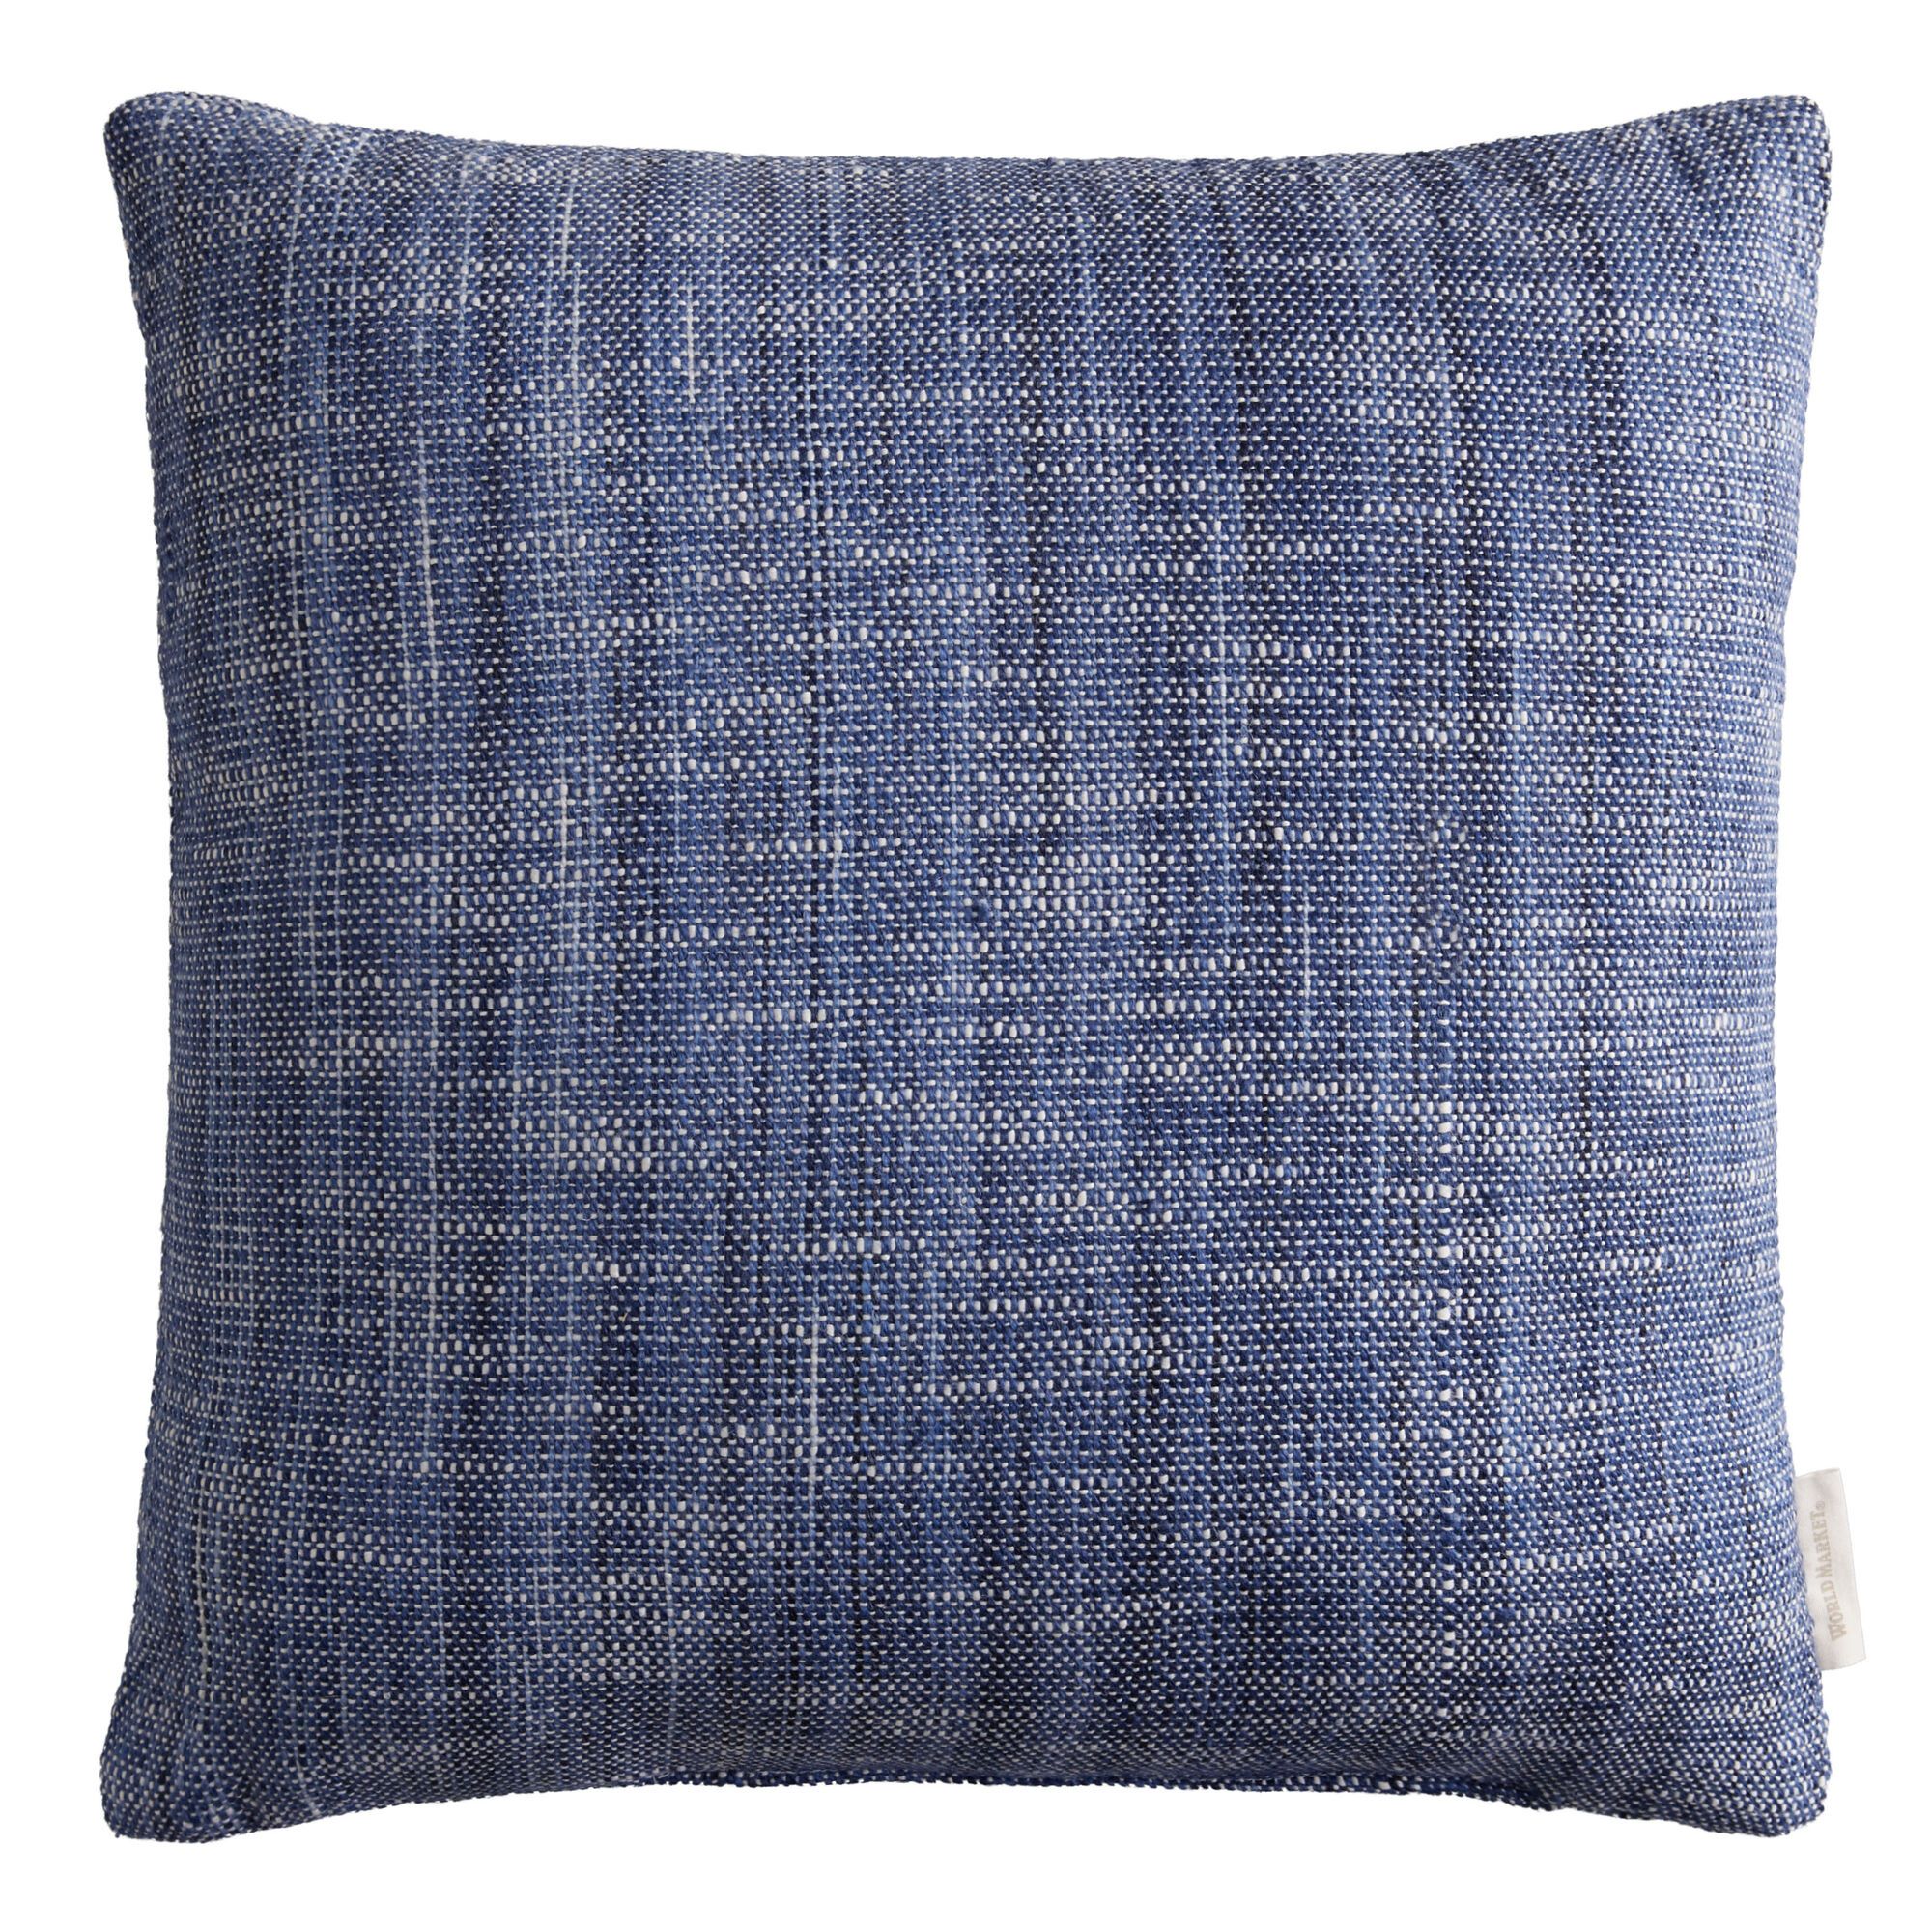 Solid Woven Reversible Indoor Outdoor Throw Pillow | World Market